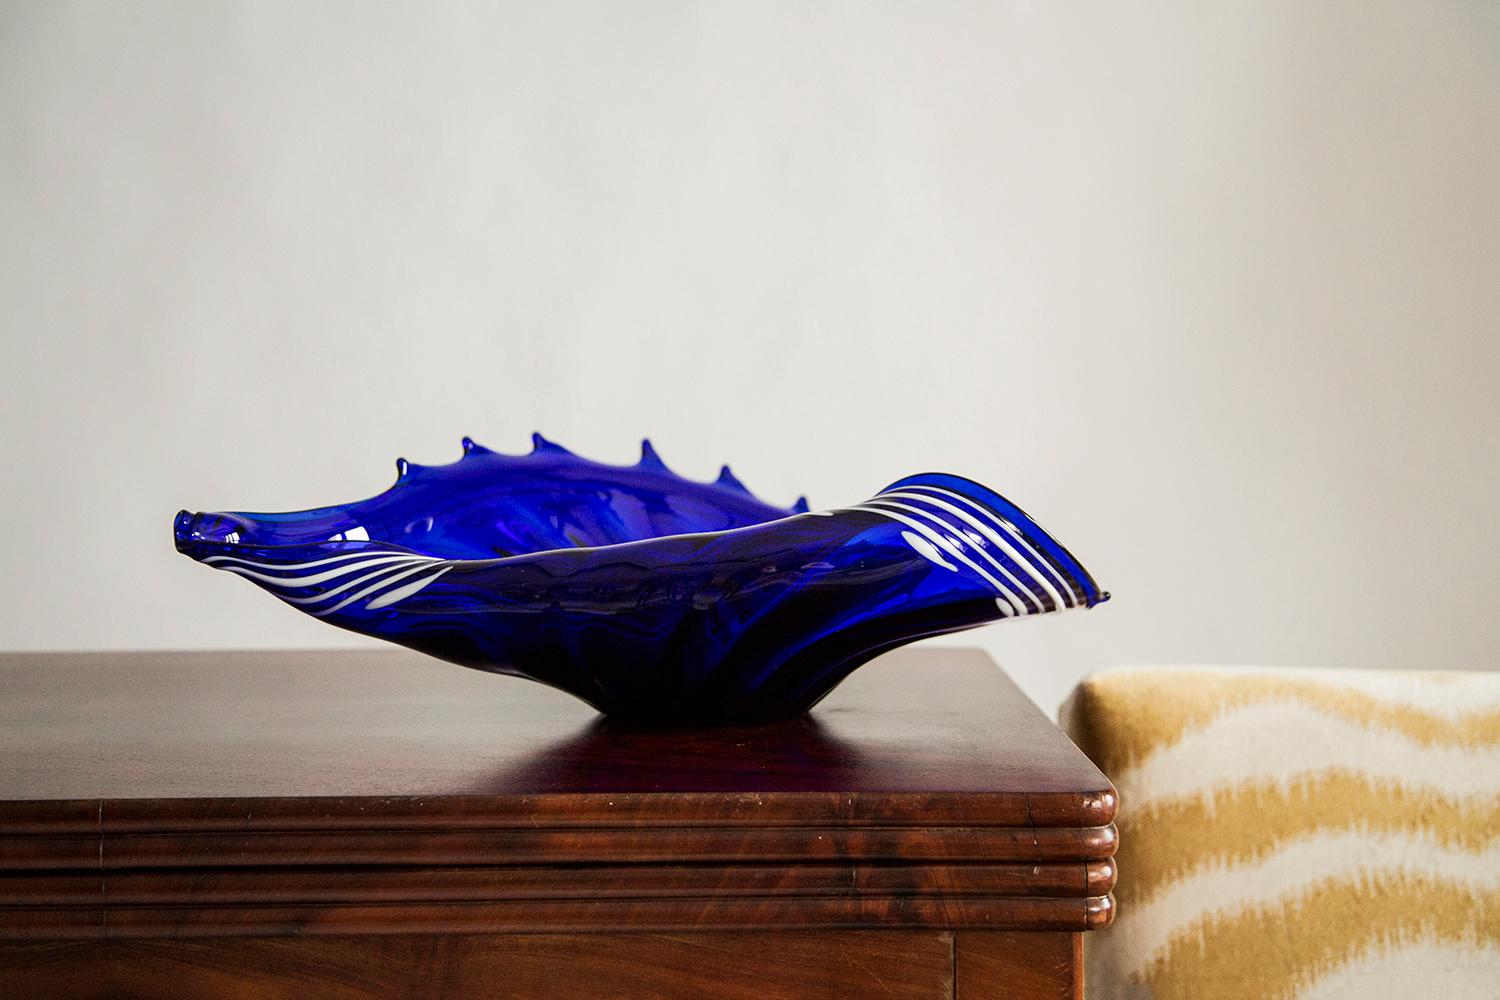 Magnifique assiette/bol décoratif en verre bleu cristal d'Italie. 
Le plateau est en très bon état, sans dommages ni fissures. 
Verre original. Une pièce unique pour chaque table et chaque intérieur ! 
Une seule pièce disponible.